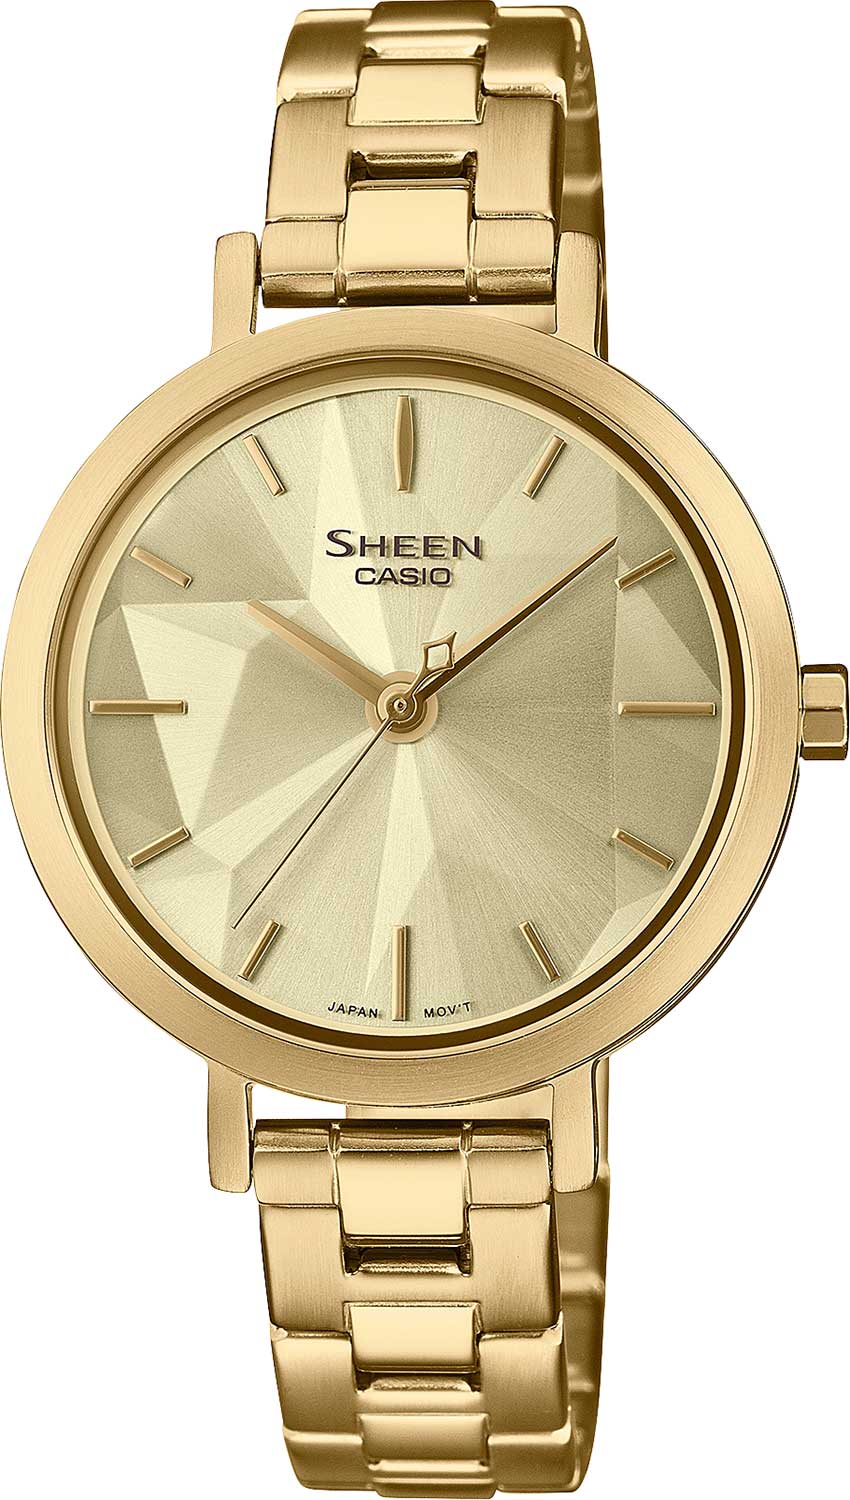    Casio Sheen SHE-4558G-9A